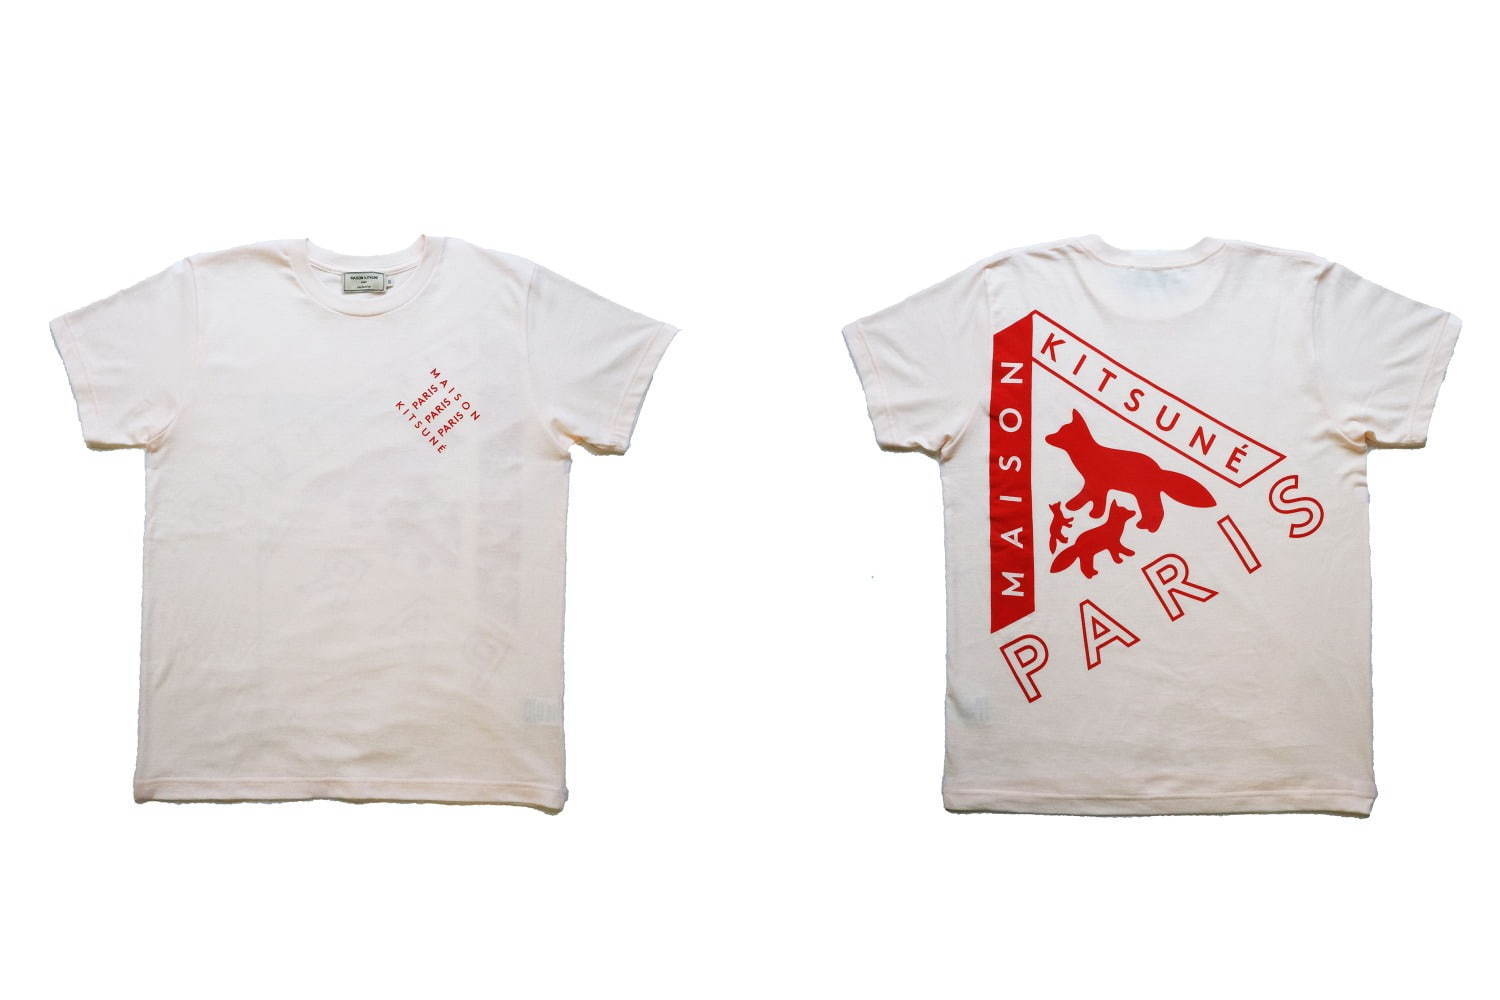 メゾン キツネ限定tシャツ 3匹のフォックス トライアングルロゴ ニュウマン新宿3周年記念 ファッションプレス